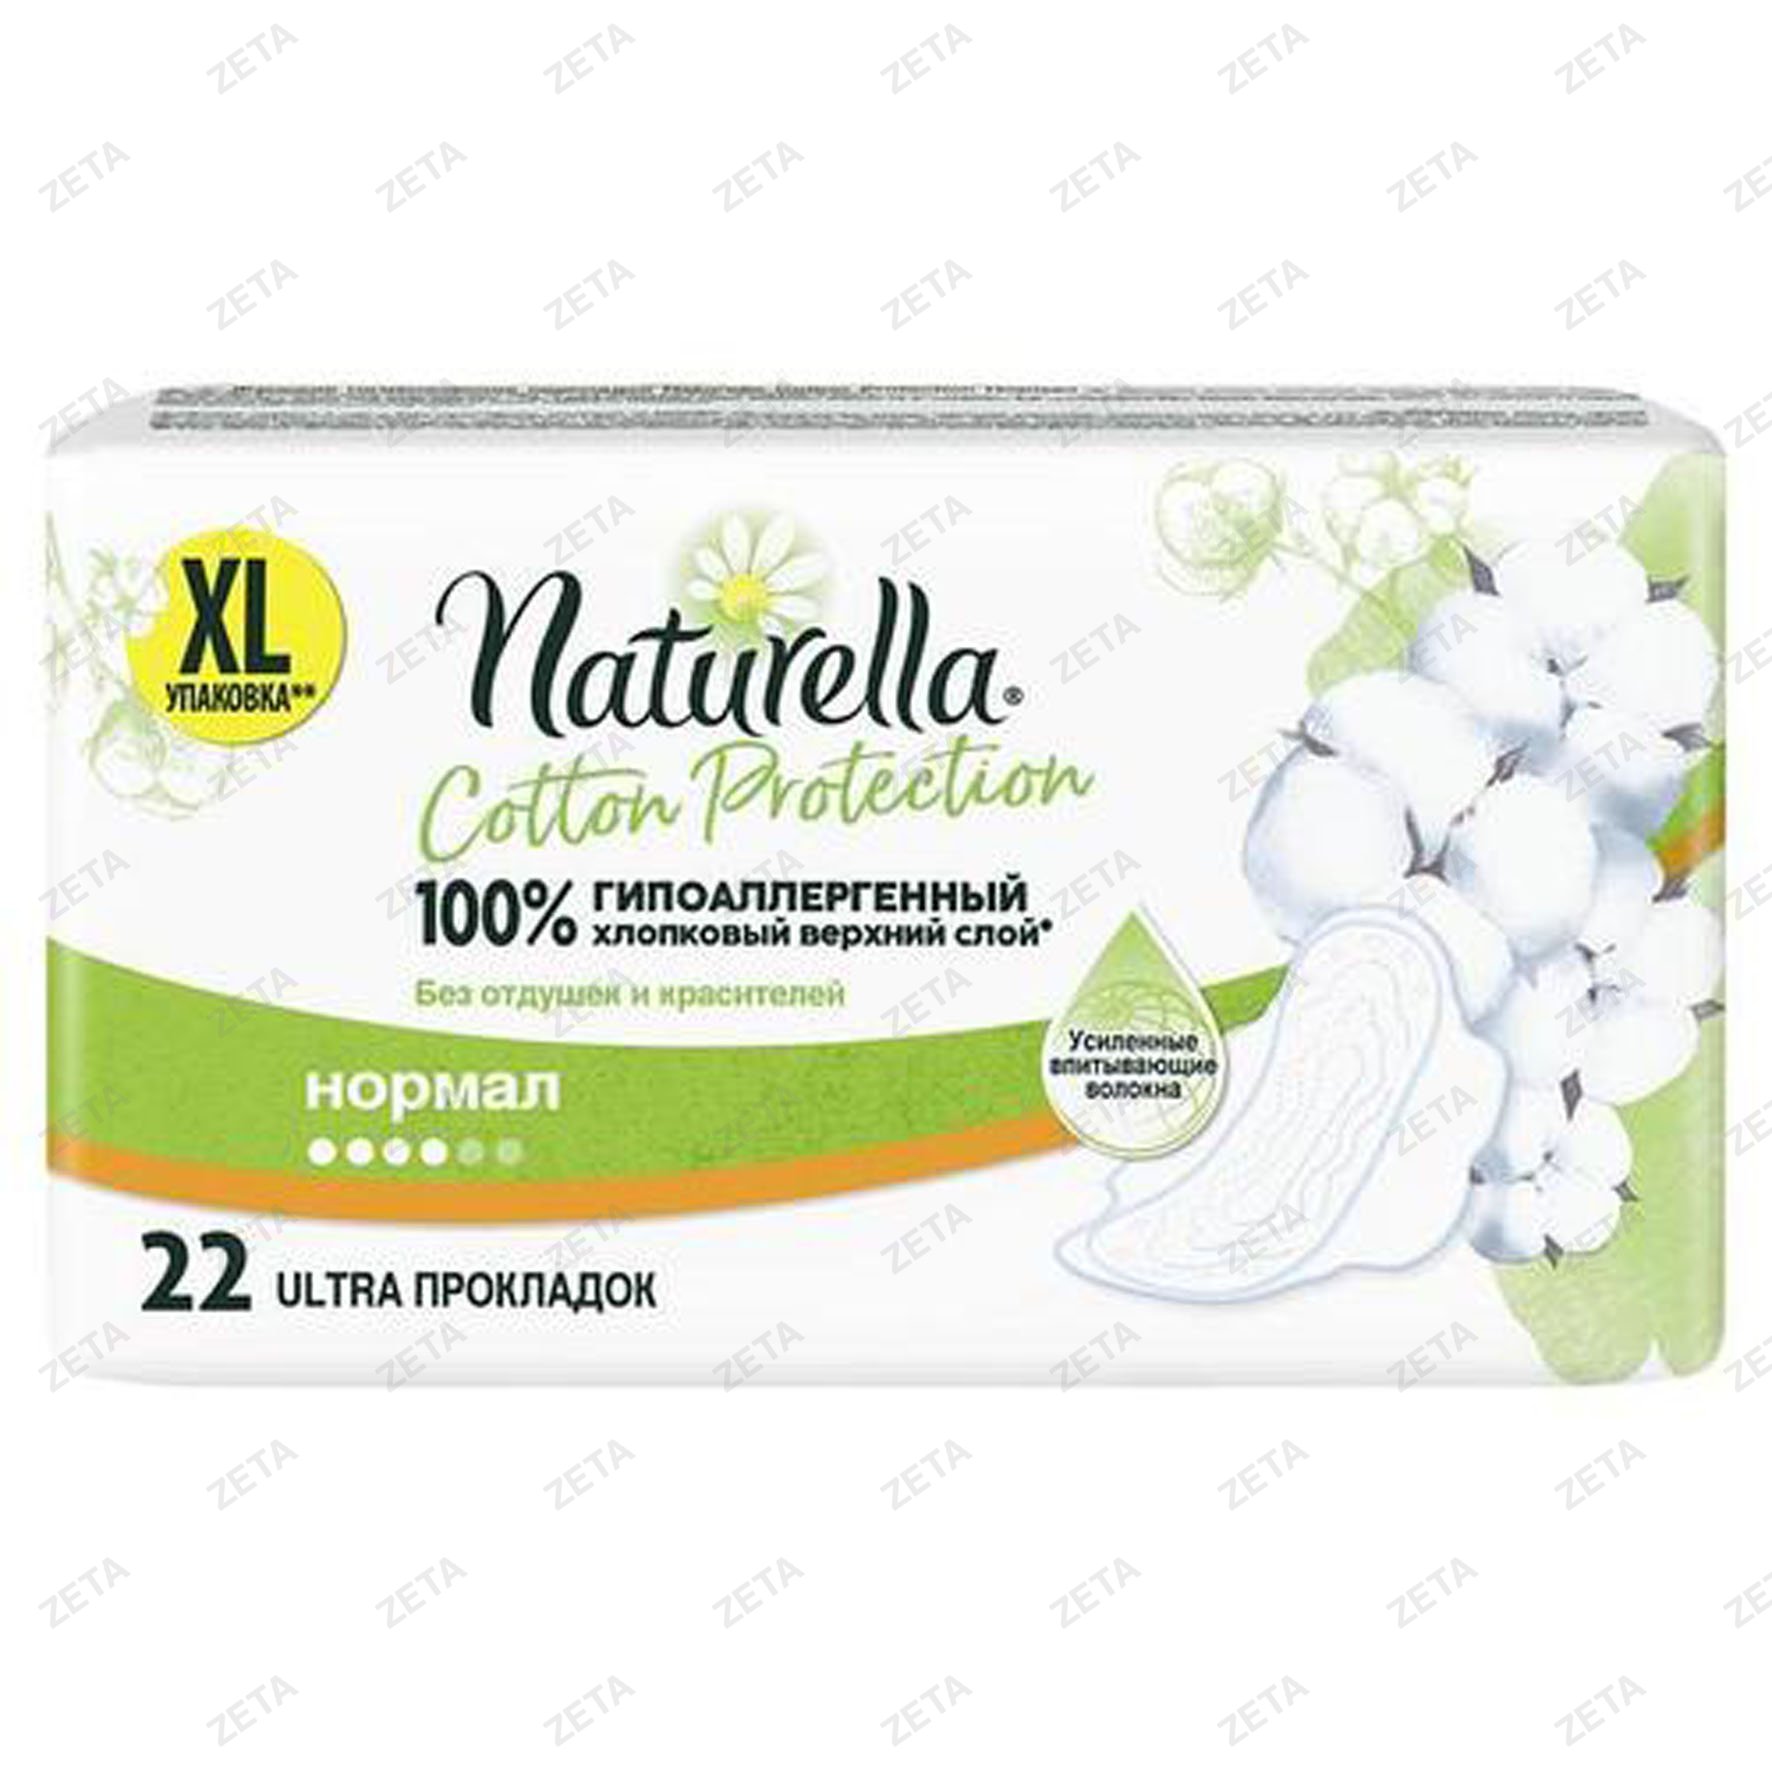 Женские гигиенические прокладки "Naturella Cotton Protection"( Normal Duo) 22 шт.